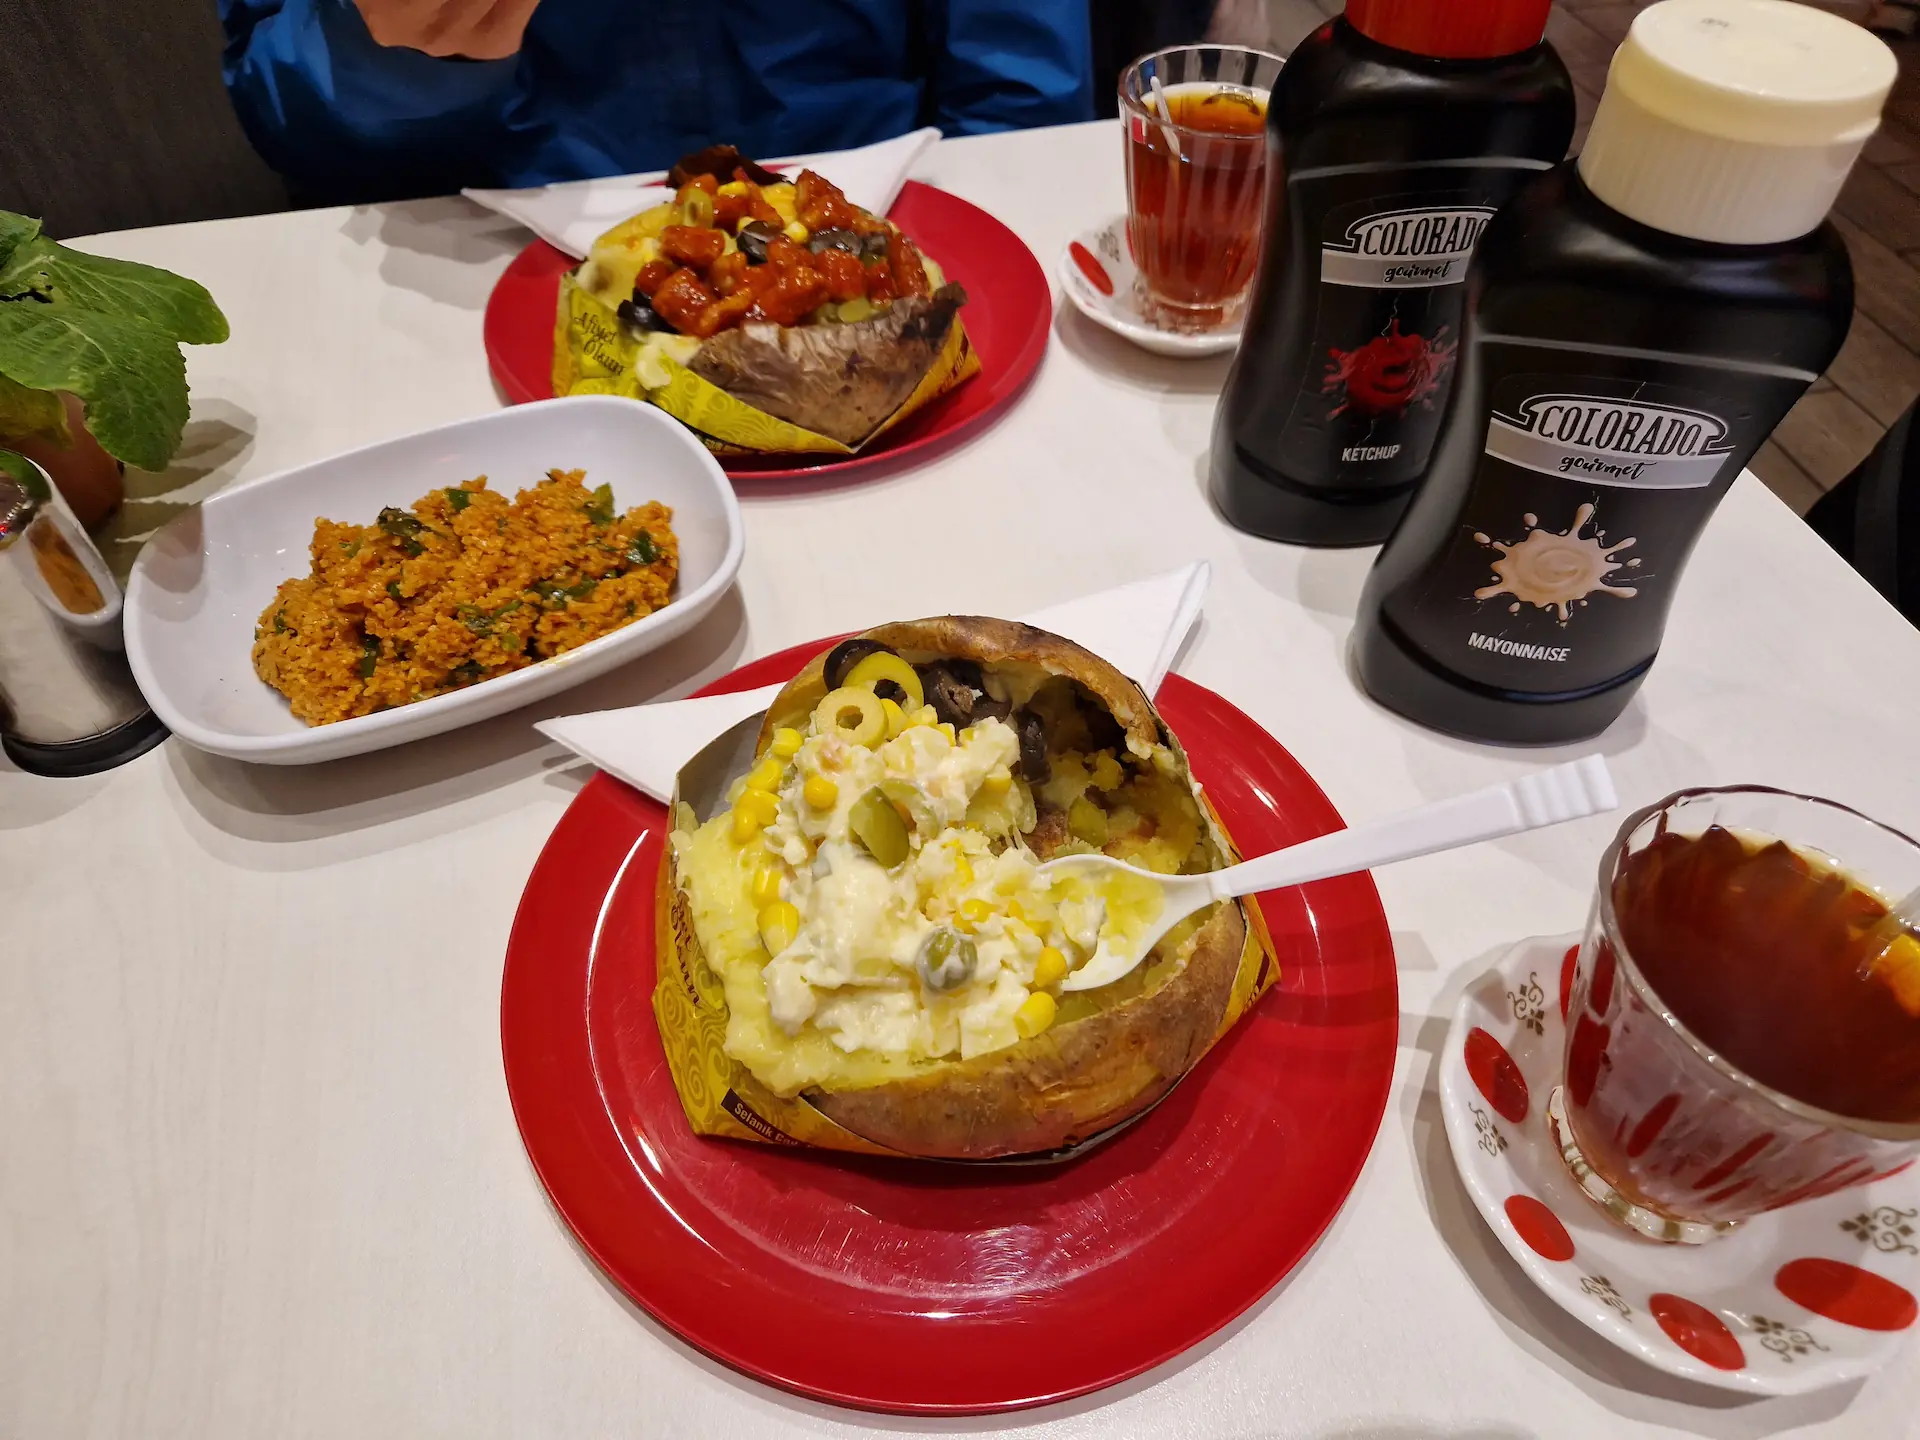 Sur une table, deux plats de kumpir aux ingrédients différents. Entre les deux plats, une entrée de couscous, deux verres de thé. Sur le côté, deux grands pots de ketchup et mayonnaise.